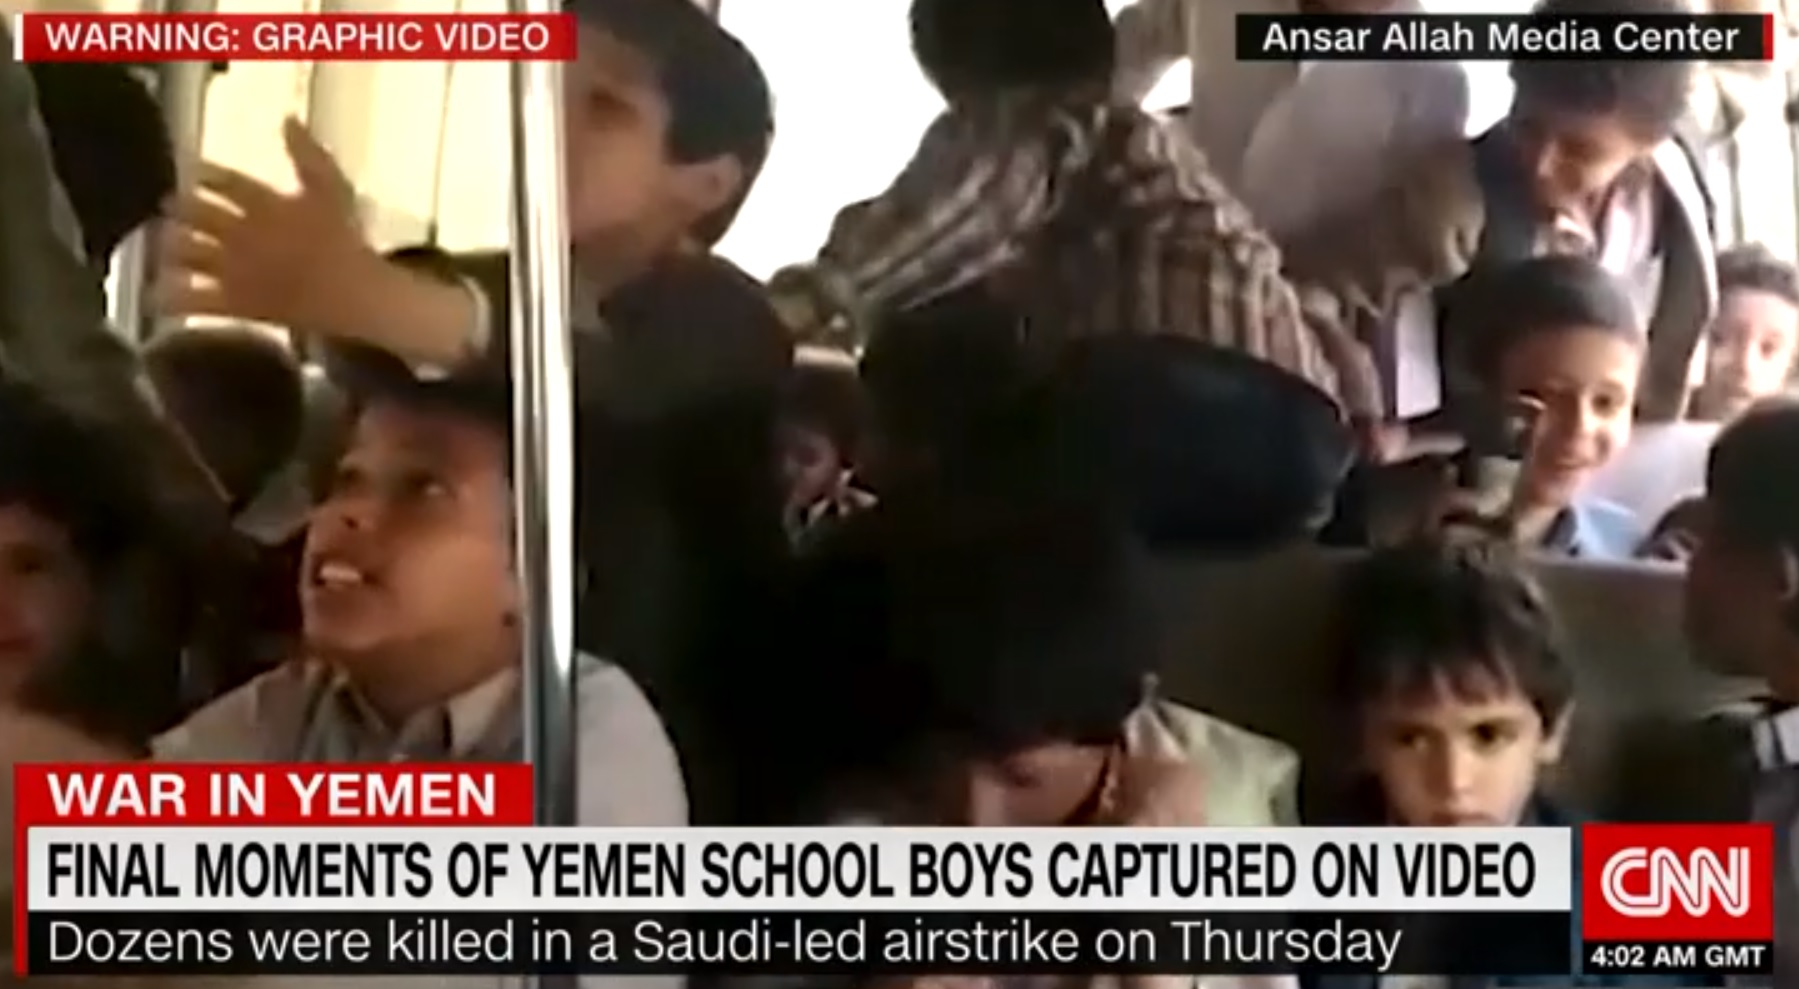 Előkerült egy videó a gyerekekkel teli buszról, ami közvetlenül azelőtt készült, hogy lebombázták őket